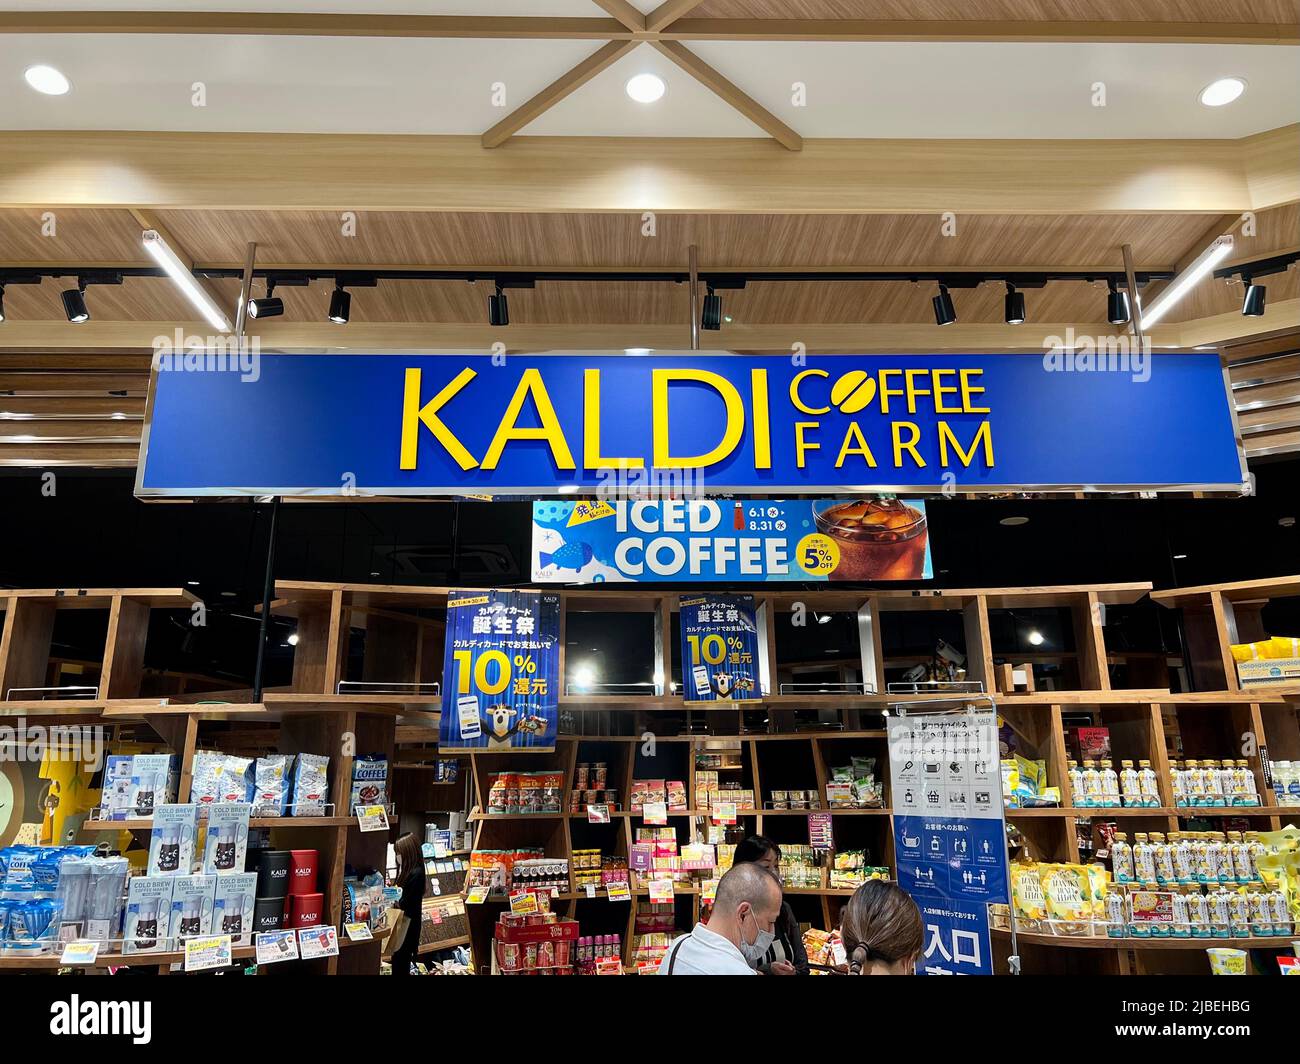 Kaldi Coffee Farm Store - un popolare negozio di caffè e novità in Giappone che vende merci da tutto il mondo. Foto Stock